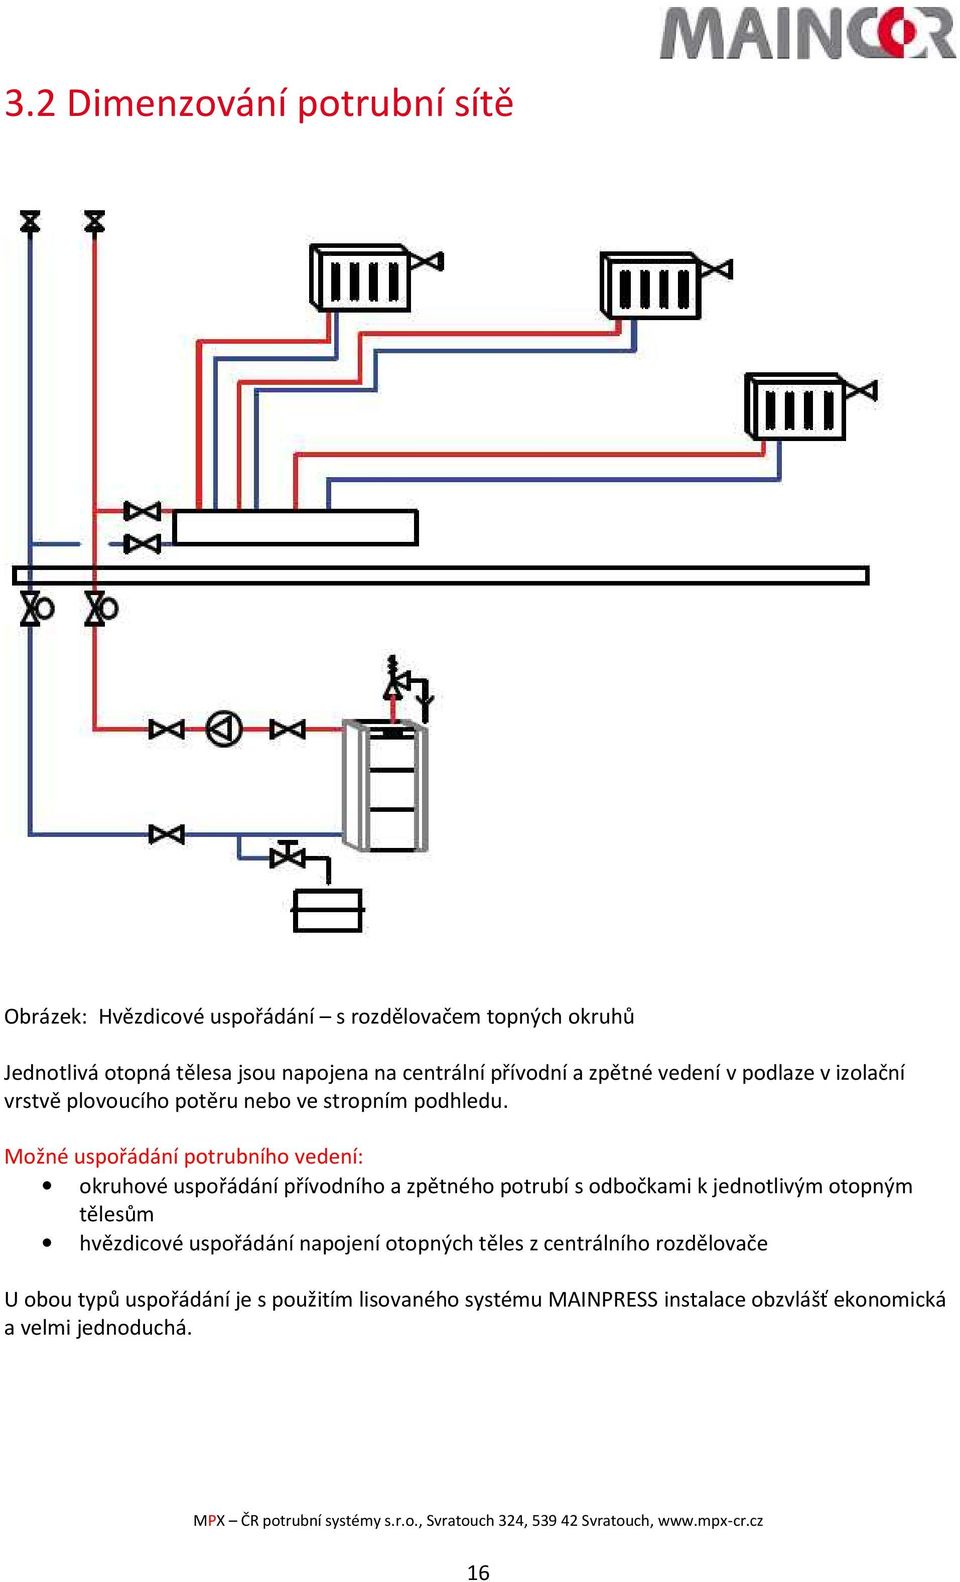 Možné uspořádání potrubního vedení: okruhové uspořádání přívodního a zpětného potrubí s odbočkami k jednotlivým otopným tělesům hvězdicové